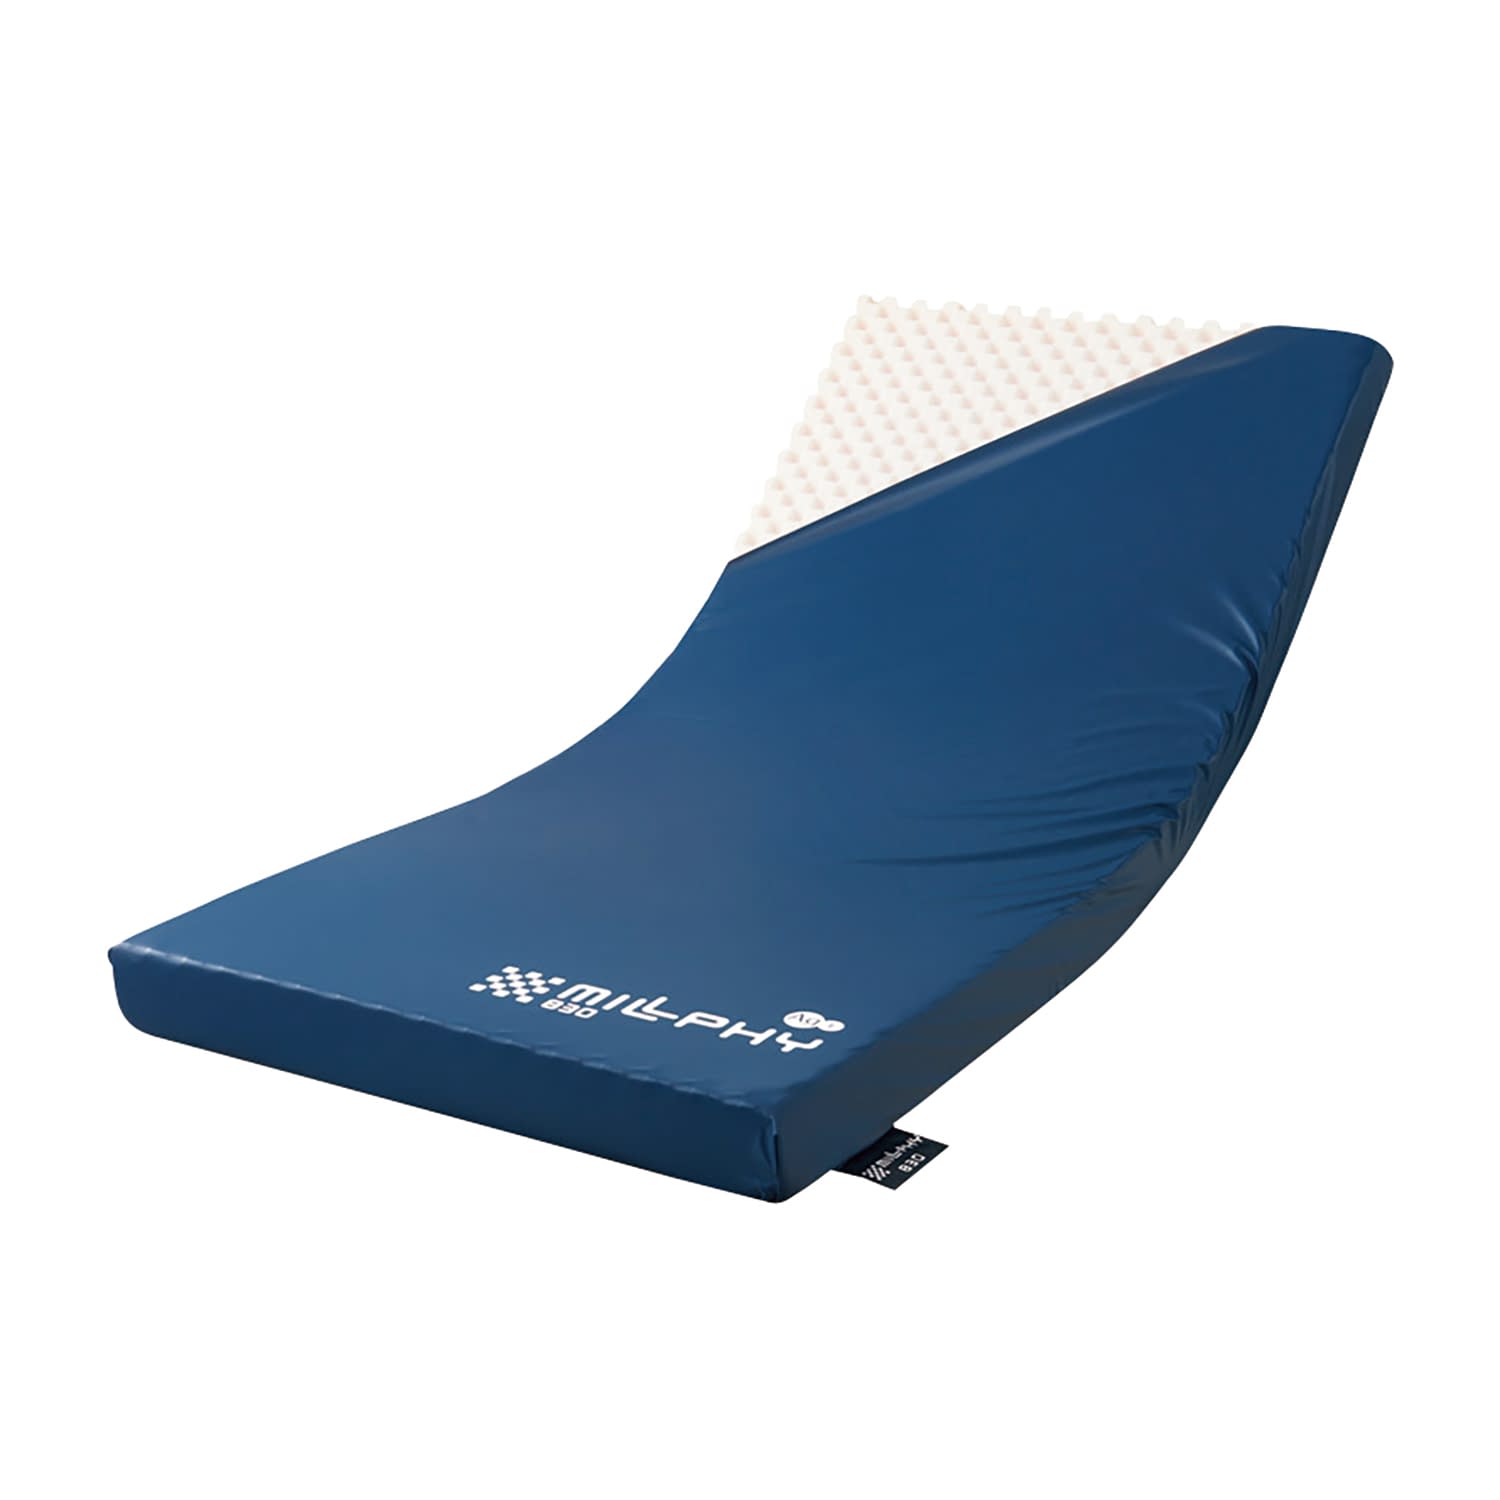 「寝返り」「起き上がり」「端座位」をサポートする3層式体圧分散式ベッドマットレスです。1層目が身体を支えてマット上の動作をサポートし、2層目で体圧をしっかりと分散、3層目がより安定した支持面を設け、端座位の姿勢と離床の動作をサポートします。カラー：紺 製品サイズ：幅90×長180×厚10cm 材質：1層目=高弾性ウレタンフォーム（特殊プロファイル加工）、2層目=ソフトタッチウレタンフォーム、 3層目=高弾性ウレタンフォーム（サイド/高硬度ウレタンフォーム）、4層目=高硬度ウレタンフォーム 材質機能：カバー：防水、制菌、伸縮 付属品名もしくは構成品セット内容：マットレス、専用カバー 個装入数：1枚松吉医科器械｜総合カタログ｜医療・介護・ドクター・ナース